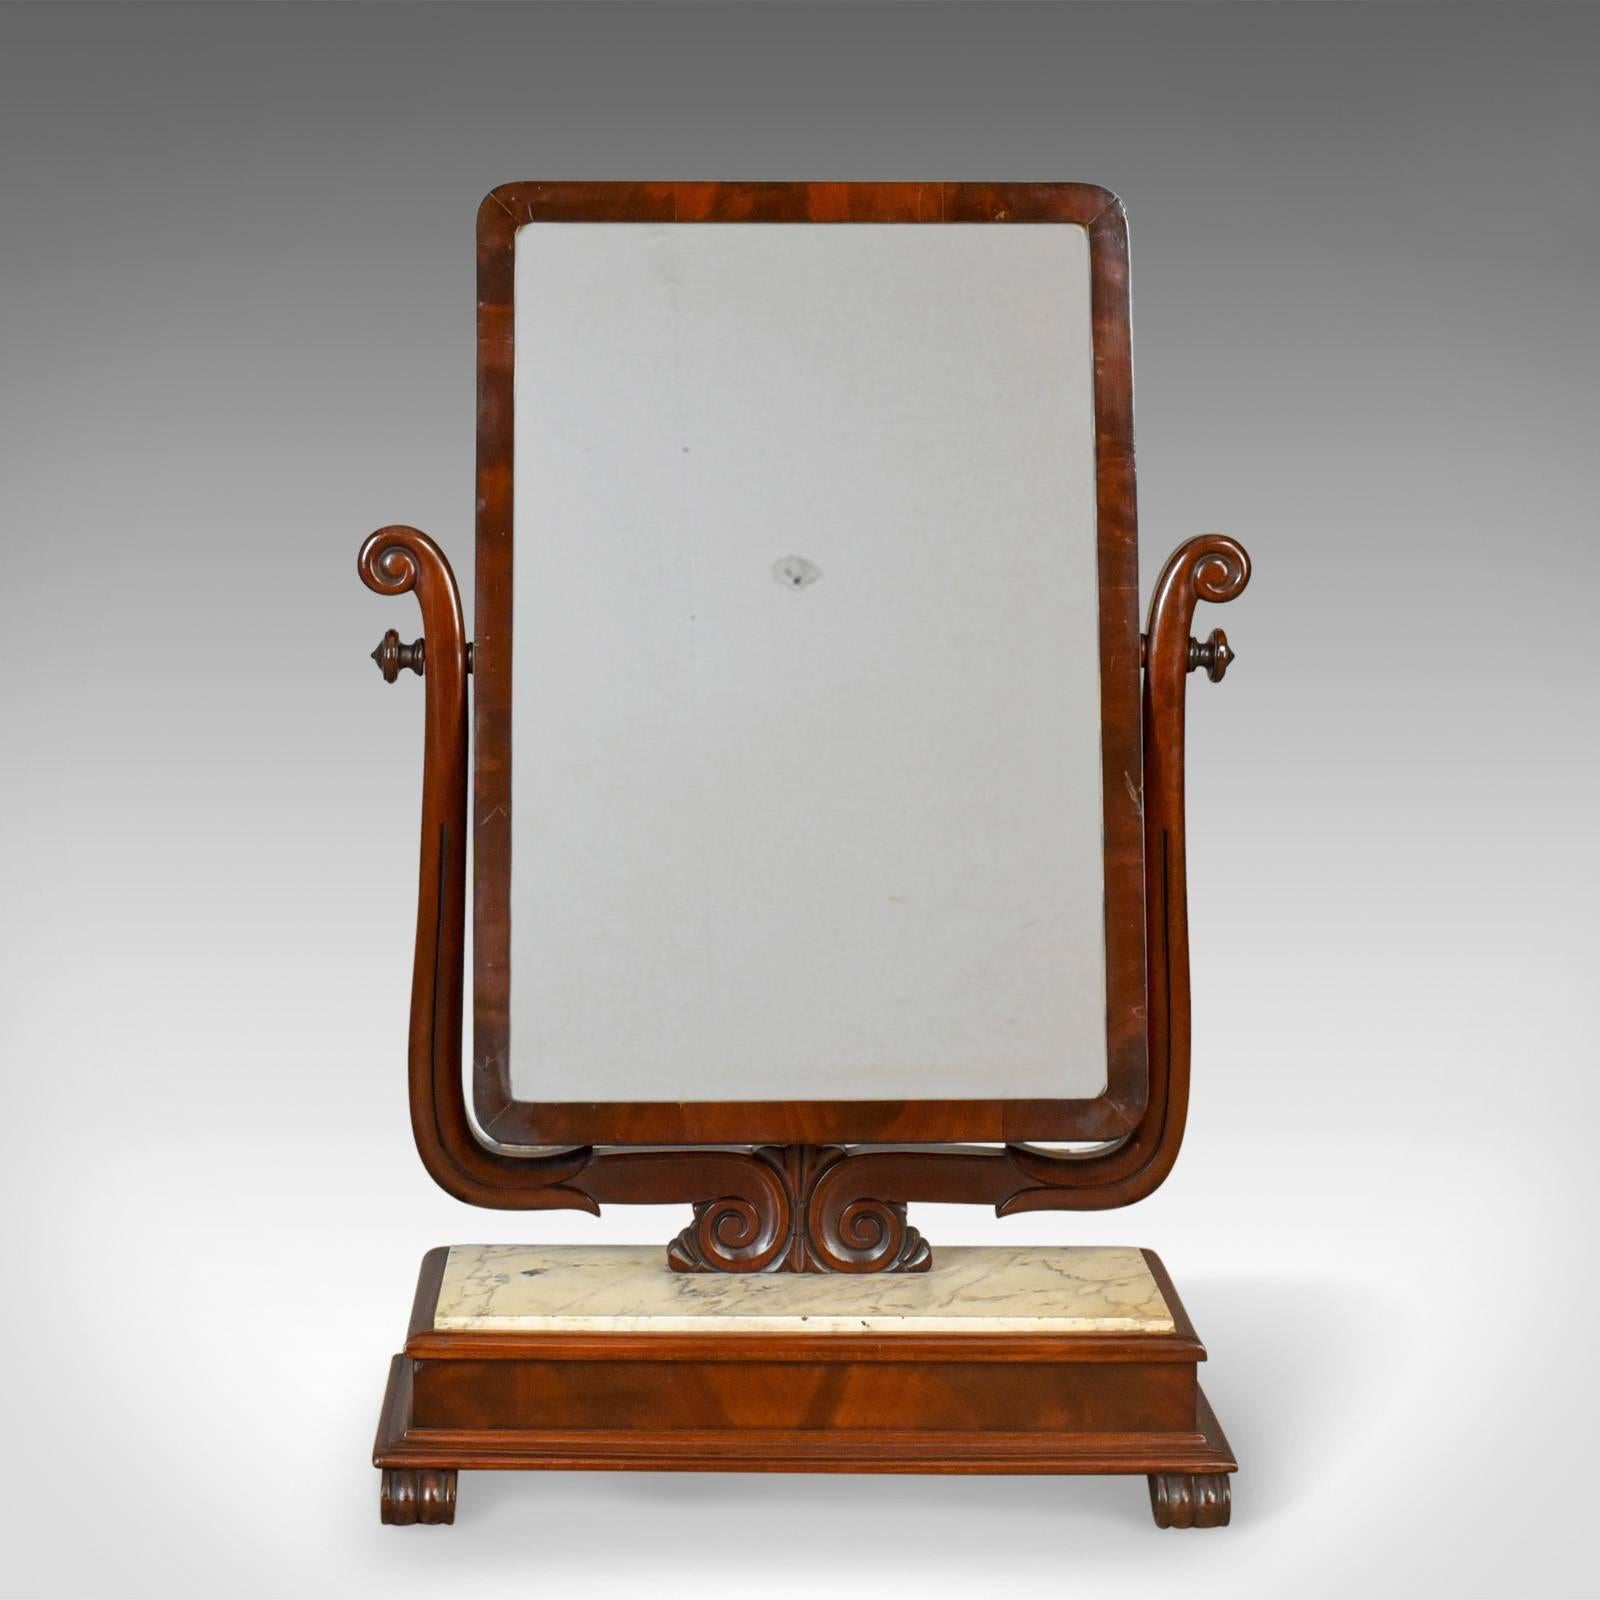 Dies ist eine große antike Eitelkeit Spiegel, eine Toilette oder Schaukel Spiegel, Englisch, viktorianischen mit einem Marmorsockel aus ca. 1850.

Ein wunderschönes und ungewöhnliches Beispiel für einen viktorianischen Ankleidespiegel
Aus